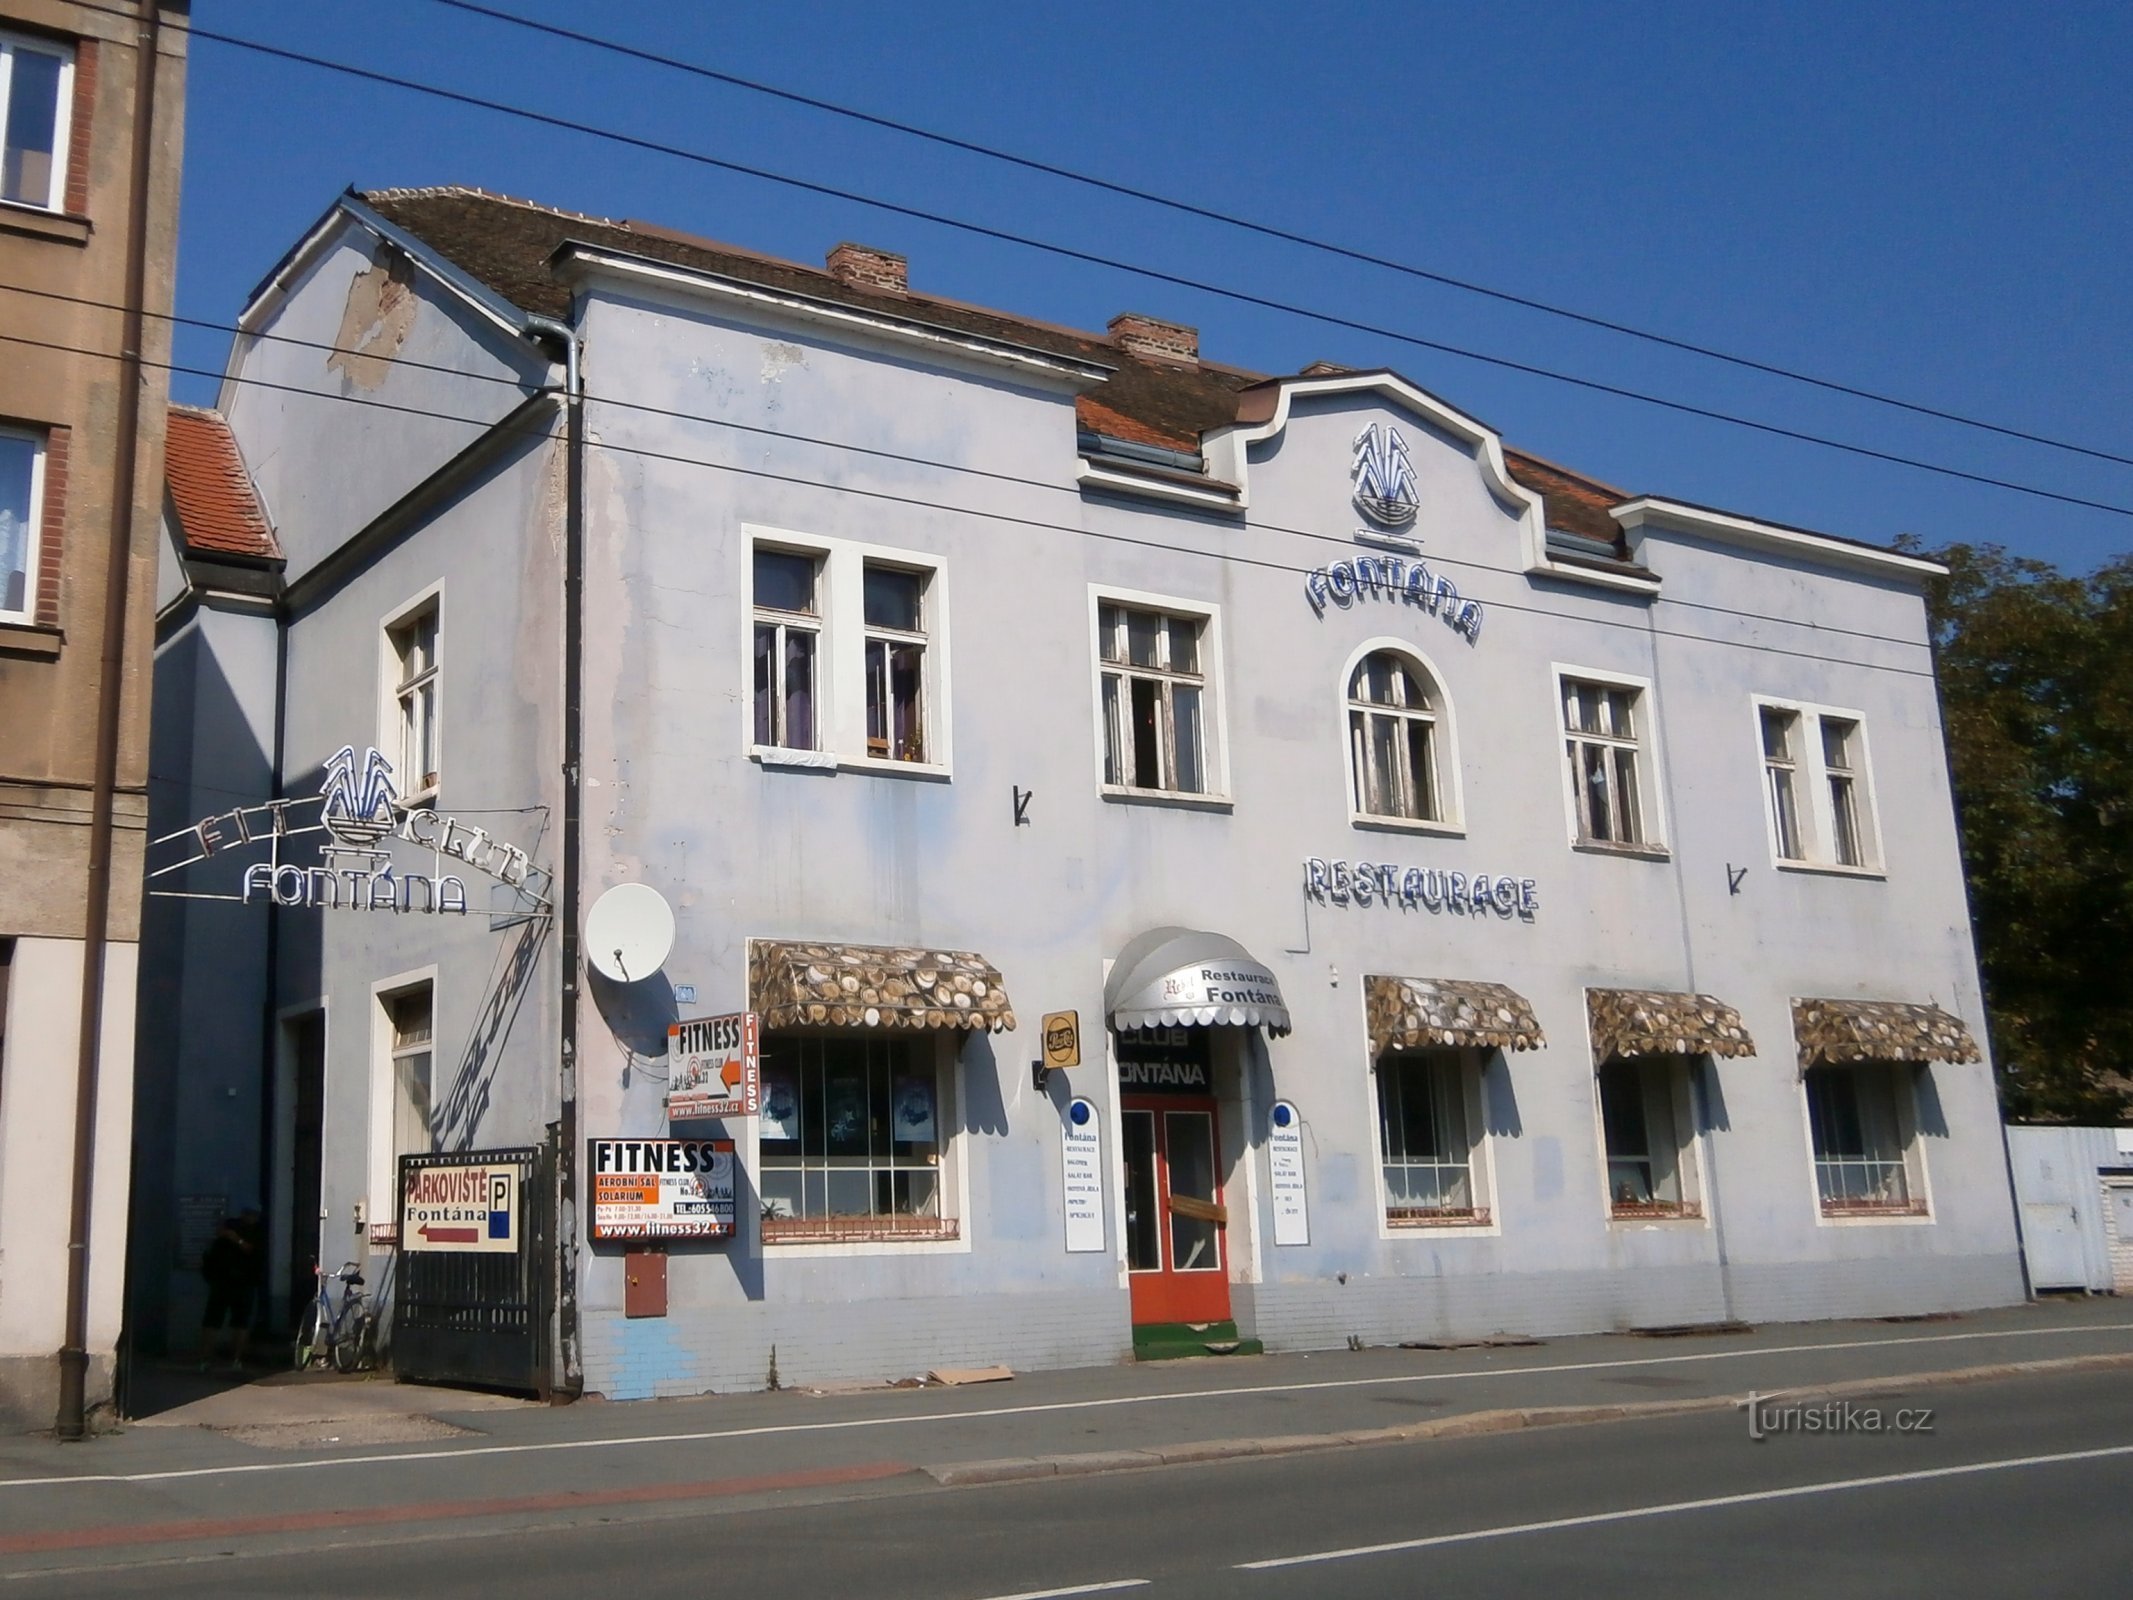 Ресторан Fontana (Градец Кралове, 17.9.2014)